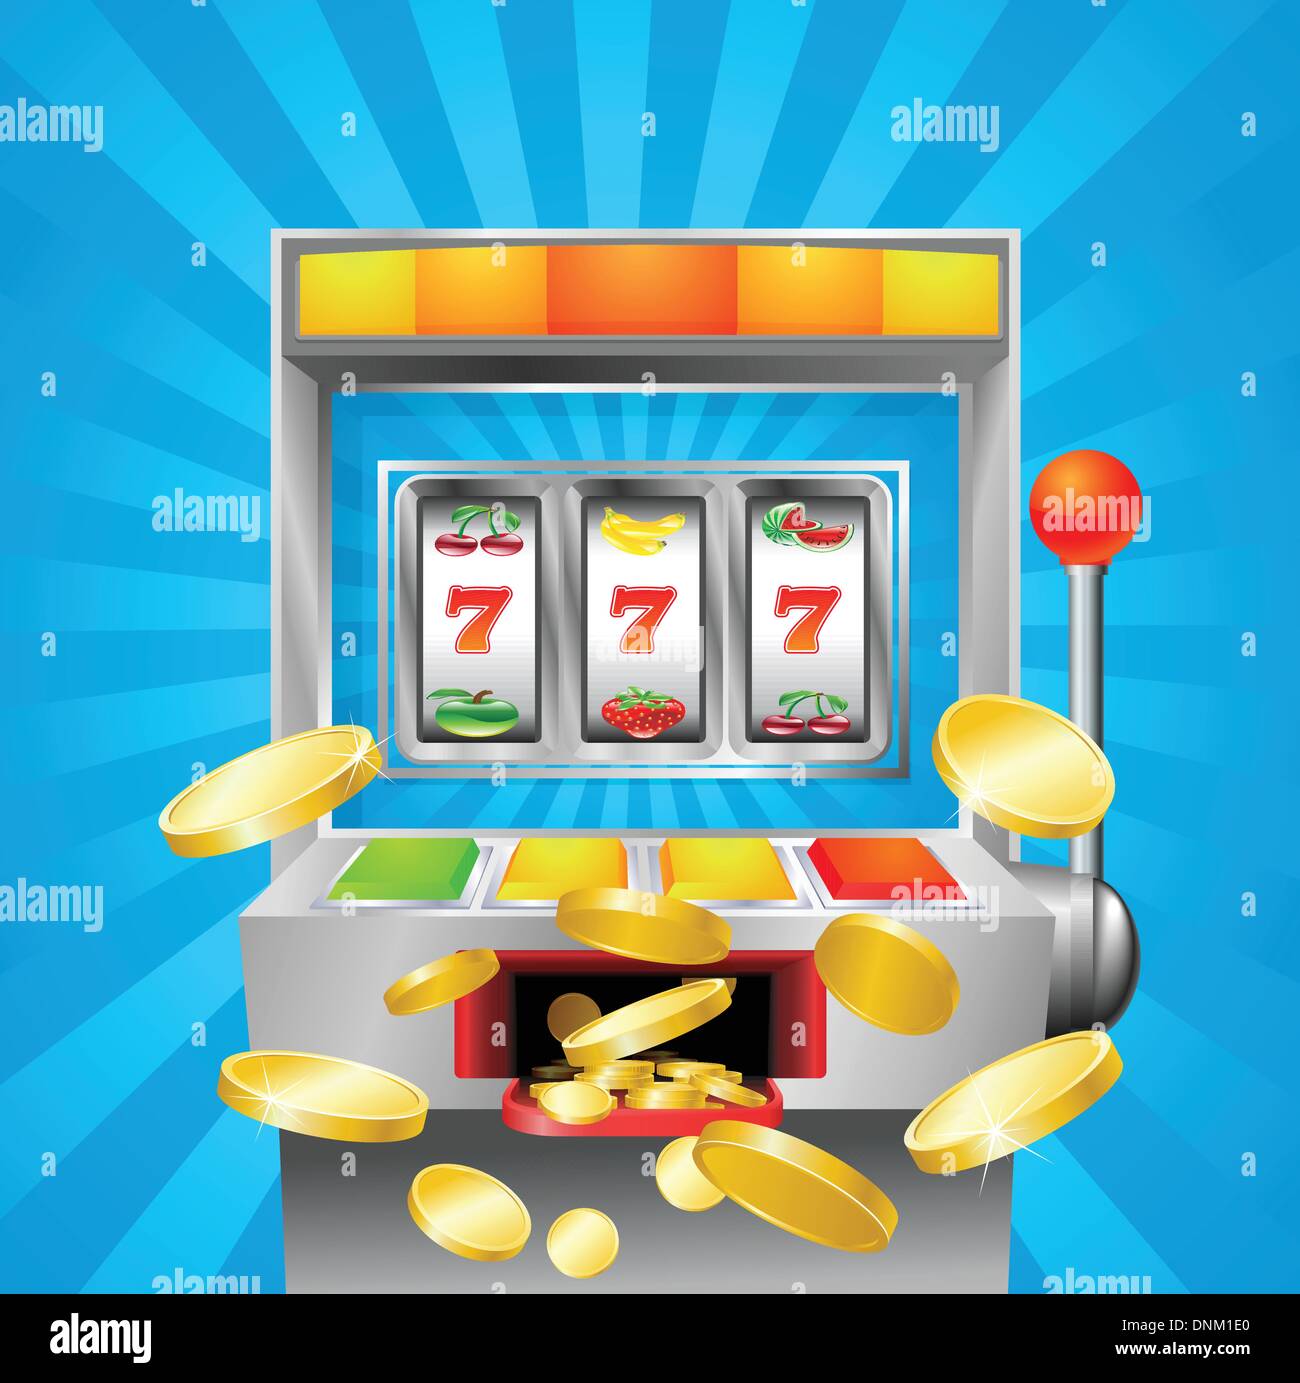 Eine Frucht Spielautomaten im 7 s zu gewinnen. Goldene-Münzen ausfliegen auf den Betrachter. Stock Vektor